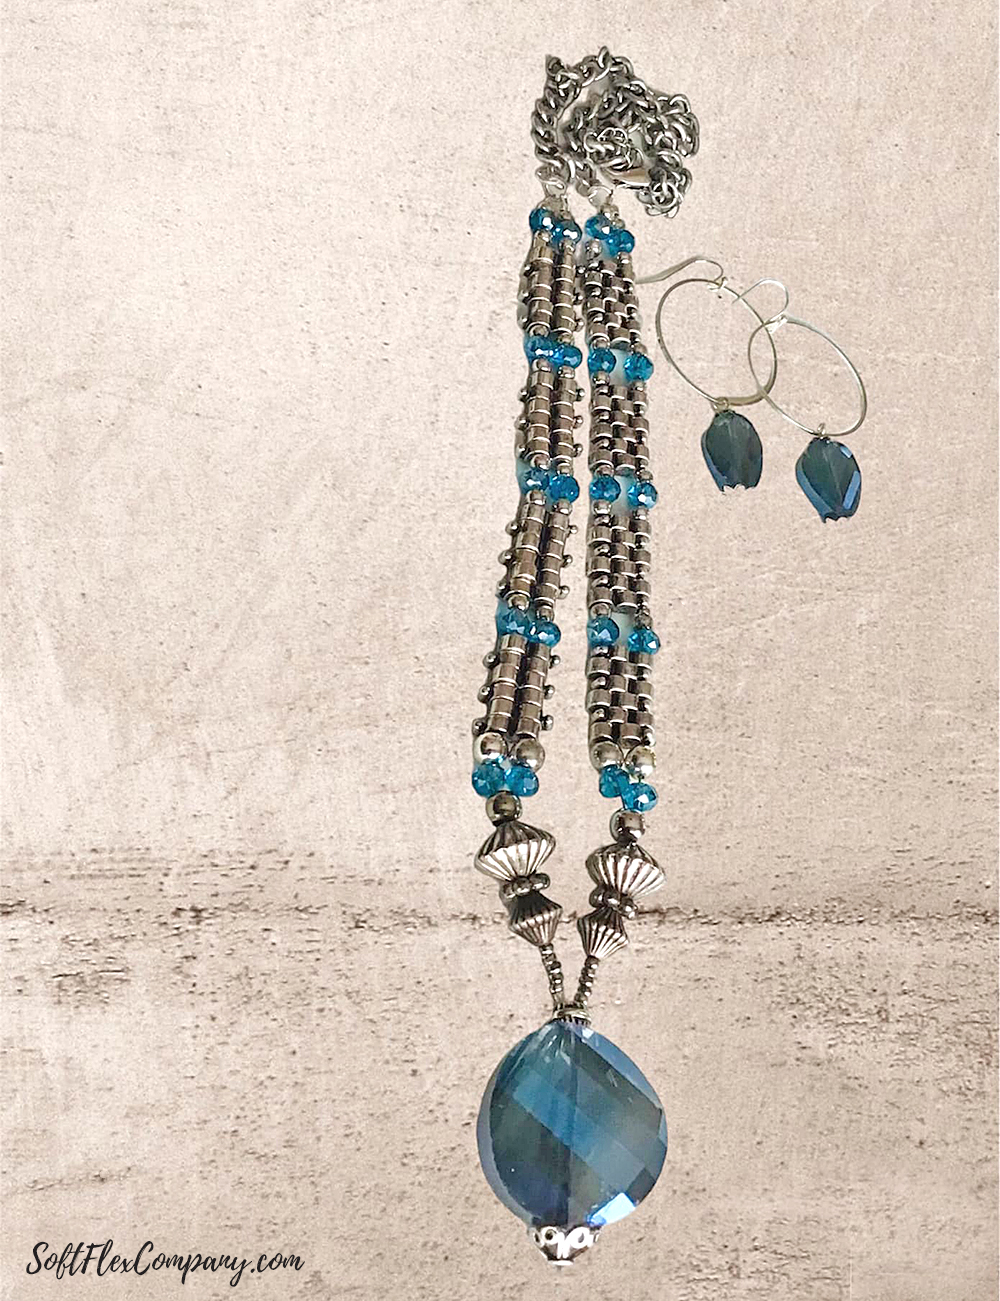 Rainy Day Blues Jewelry Design by Kathy Mott